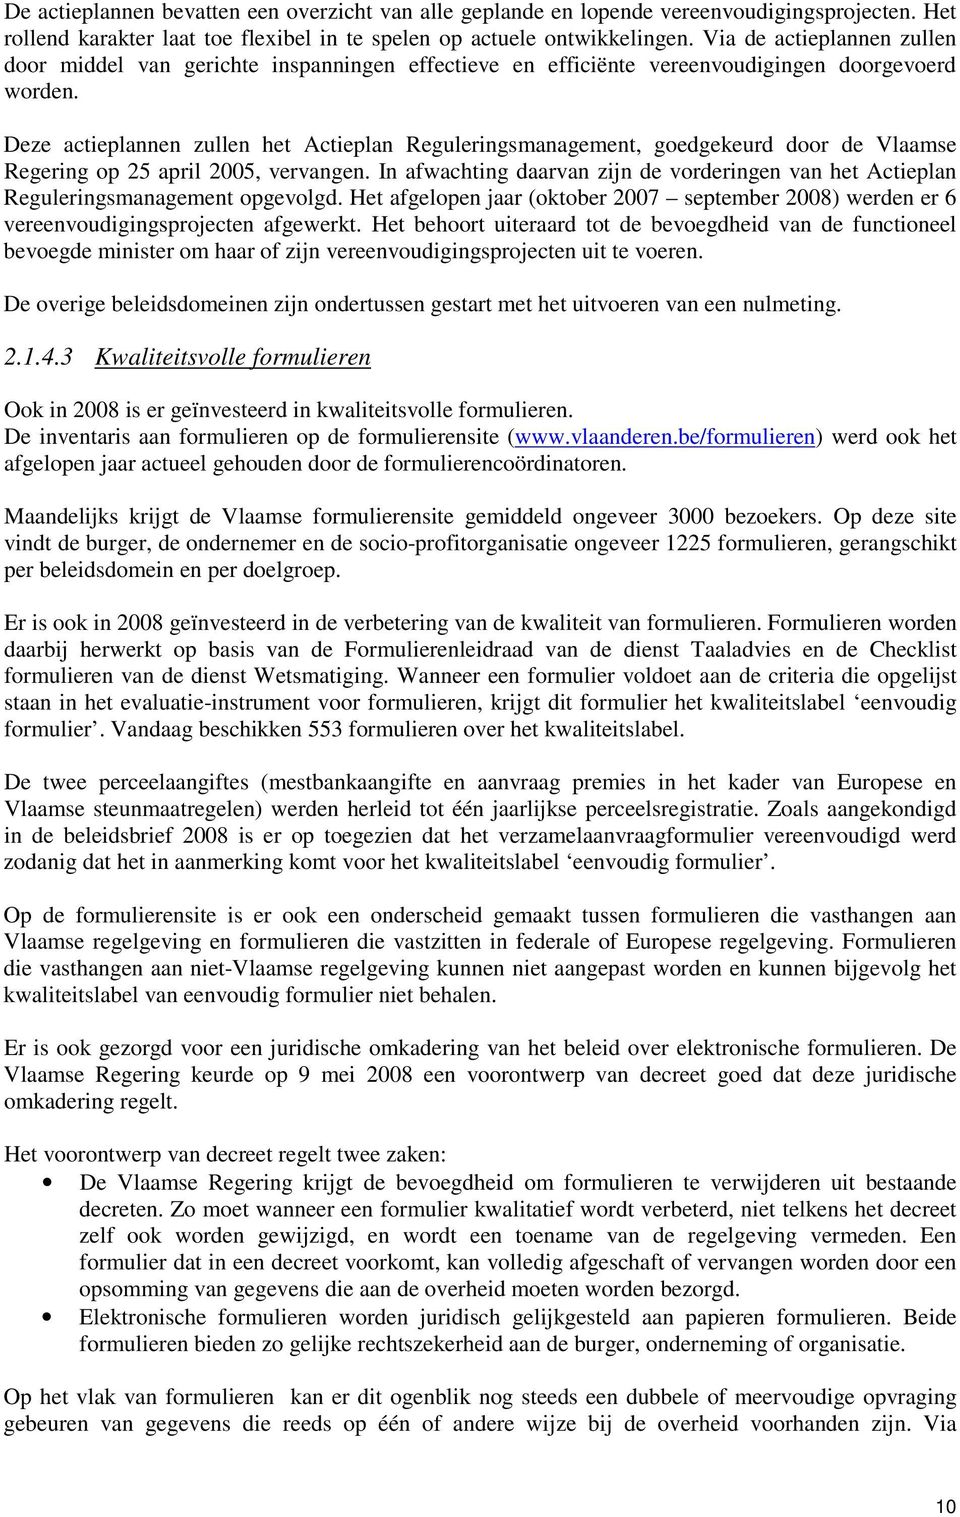 Deze actieplannen zullen het Actieplan Reguleringsmanagement, goedgekeurd door de Vlaamse Regering op 25 april 2005, vervangen.